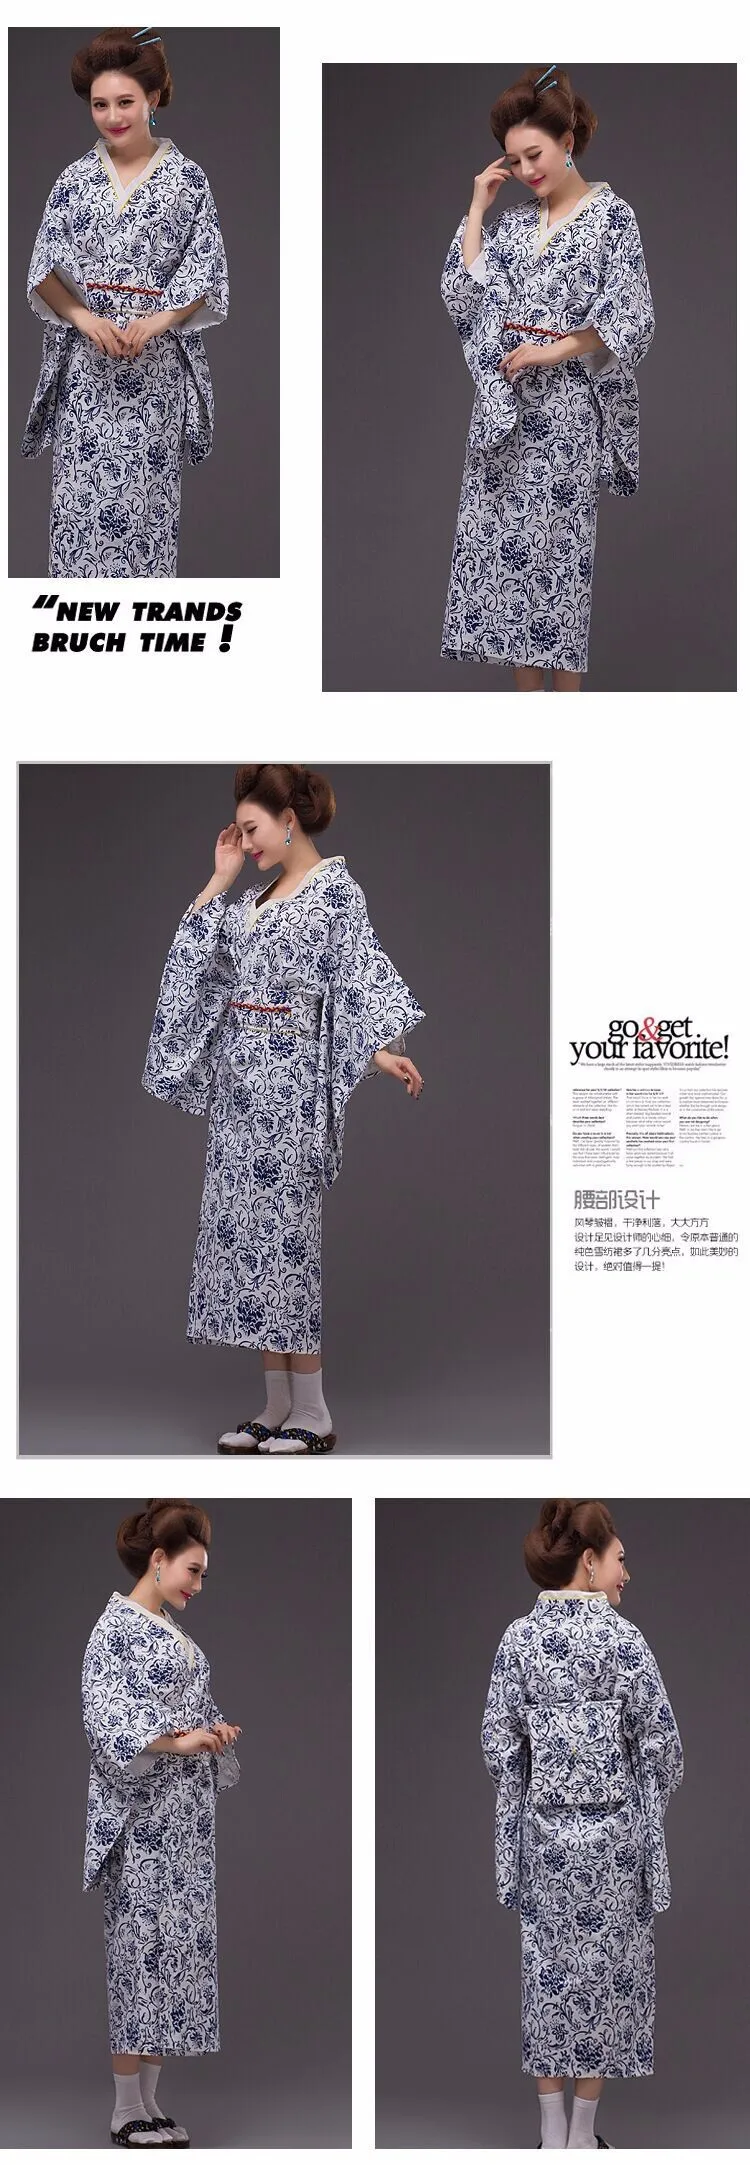 Новинка, хлопковый Халат-кимоно в стиле пиона, YukataJapanese Haori, костюм, платье с Obi Yukata высокого качества